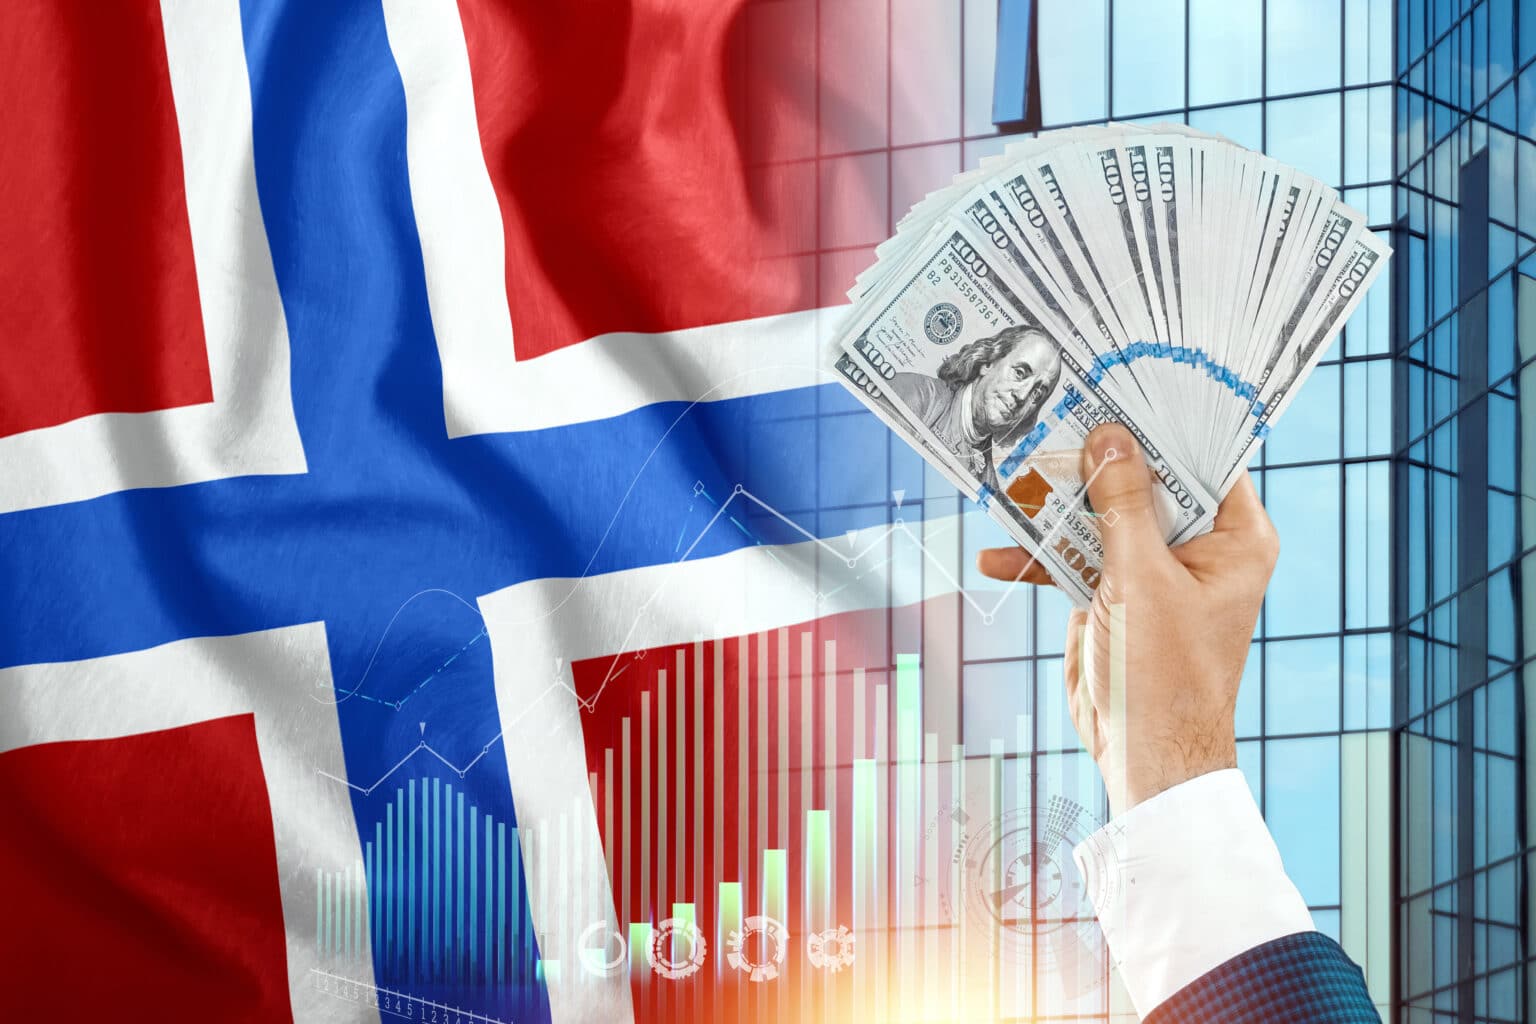 בזכות הטכנולוגיה: קרן העושר הנורבגית רשמה רווח של 110 מיליארד דולר ברבעון הראשון